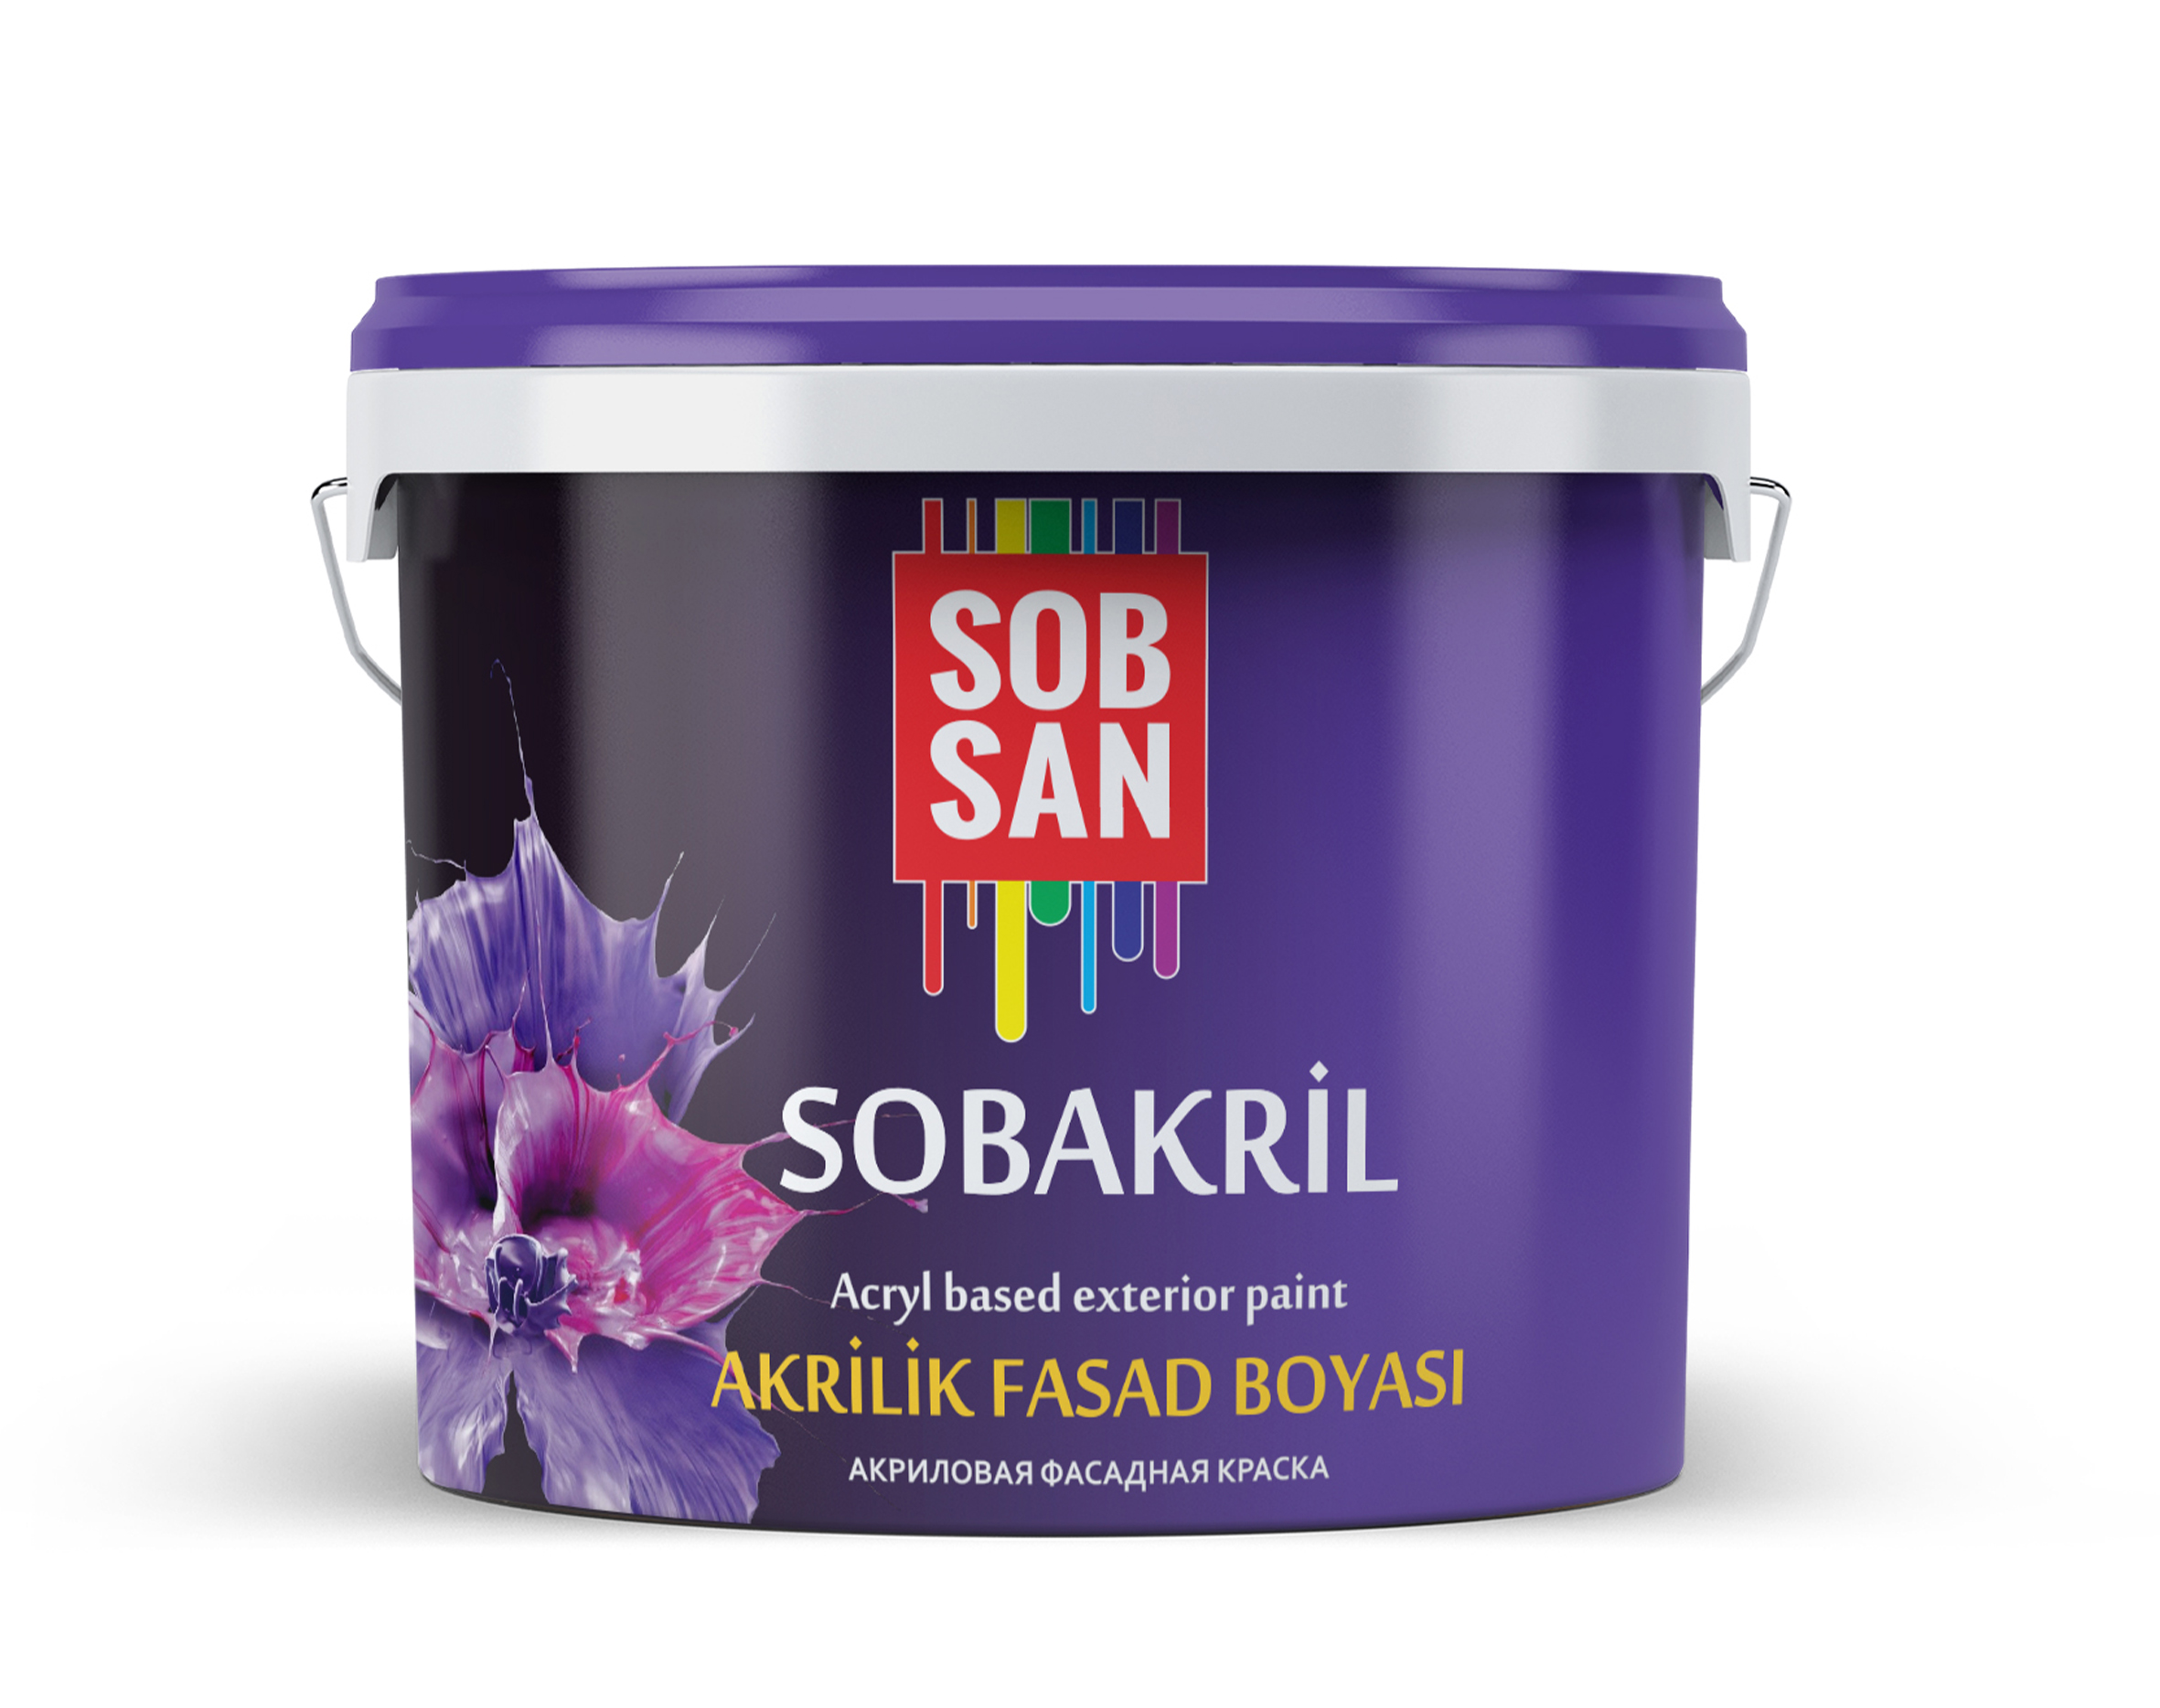 SOBAKRIL